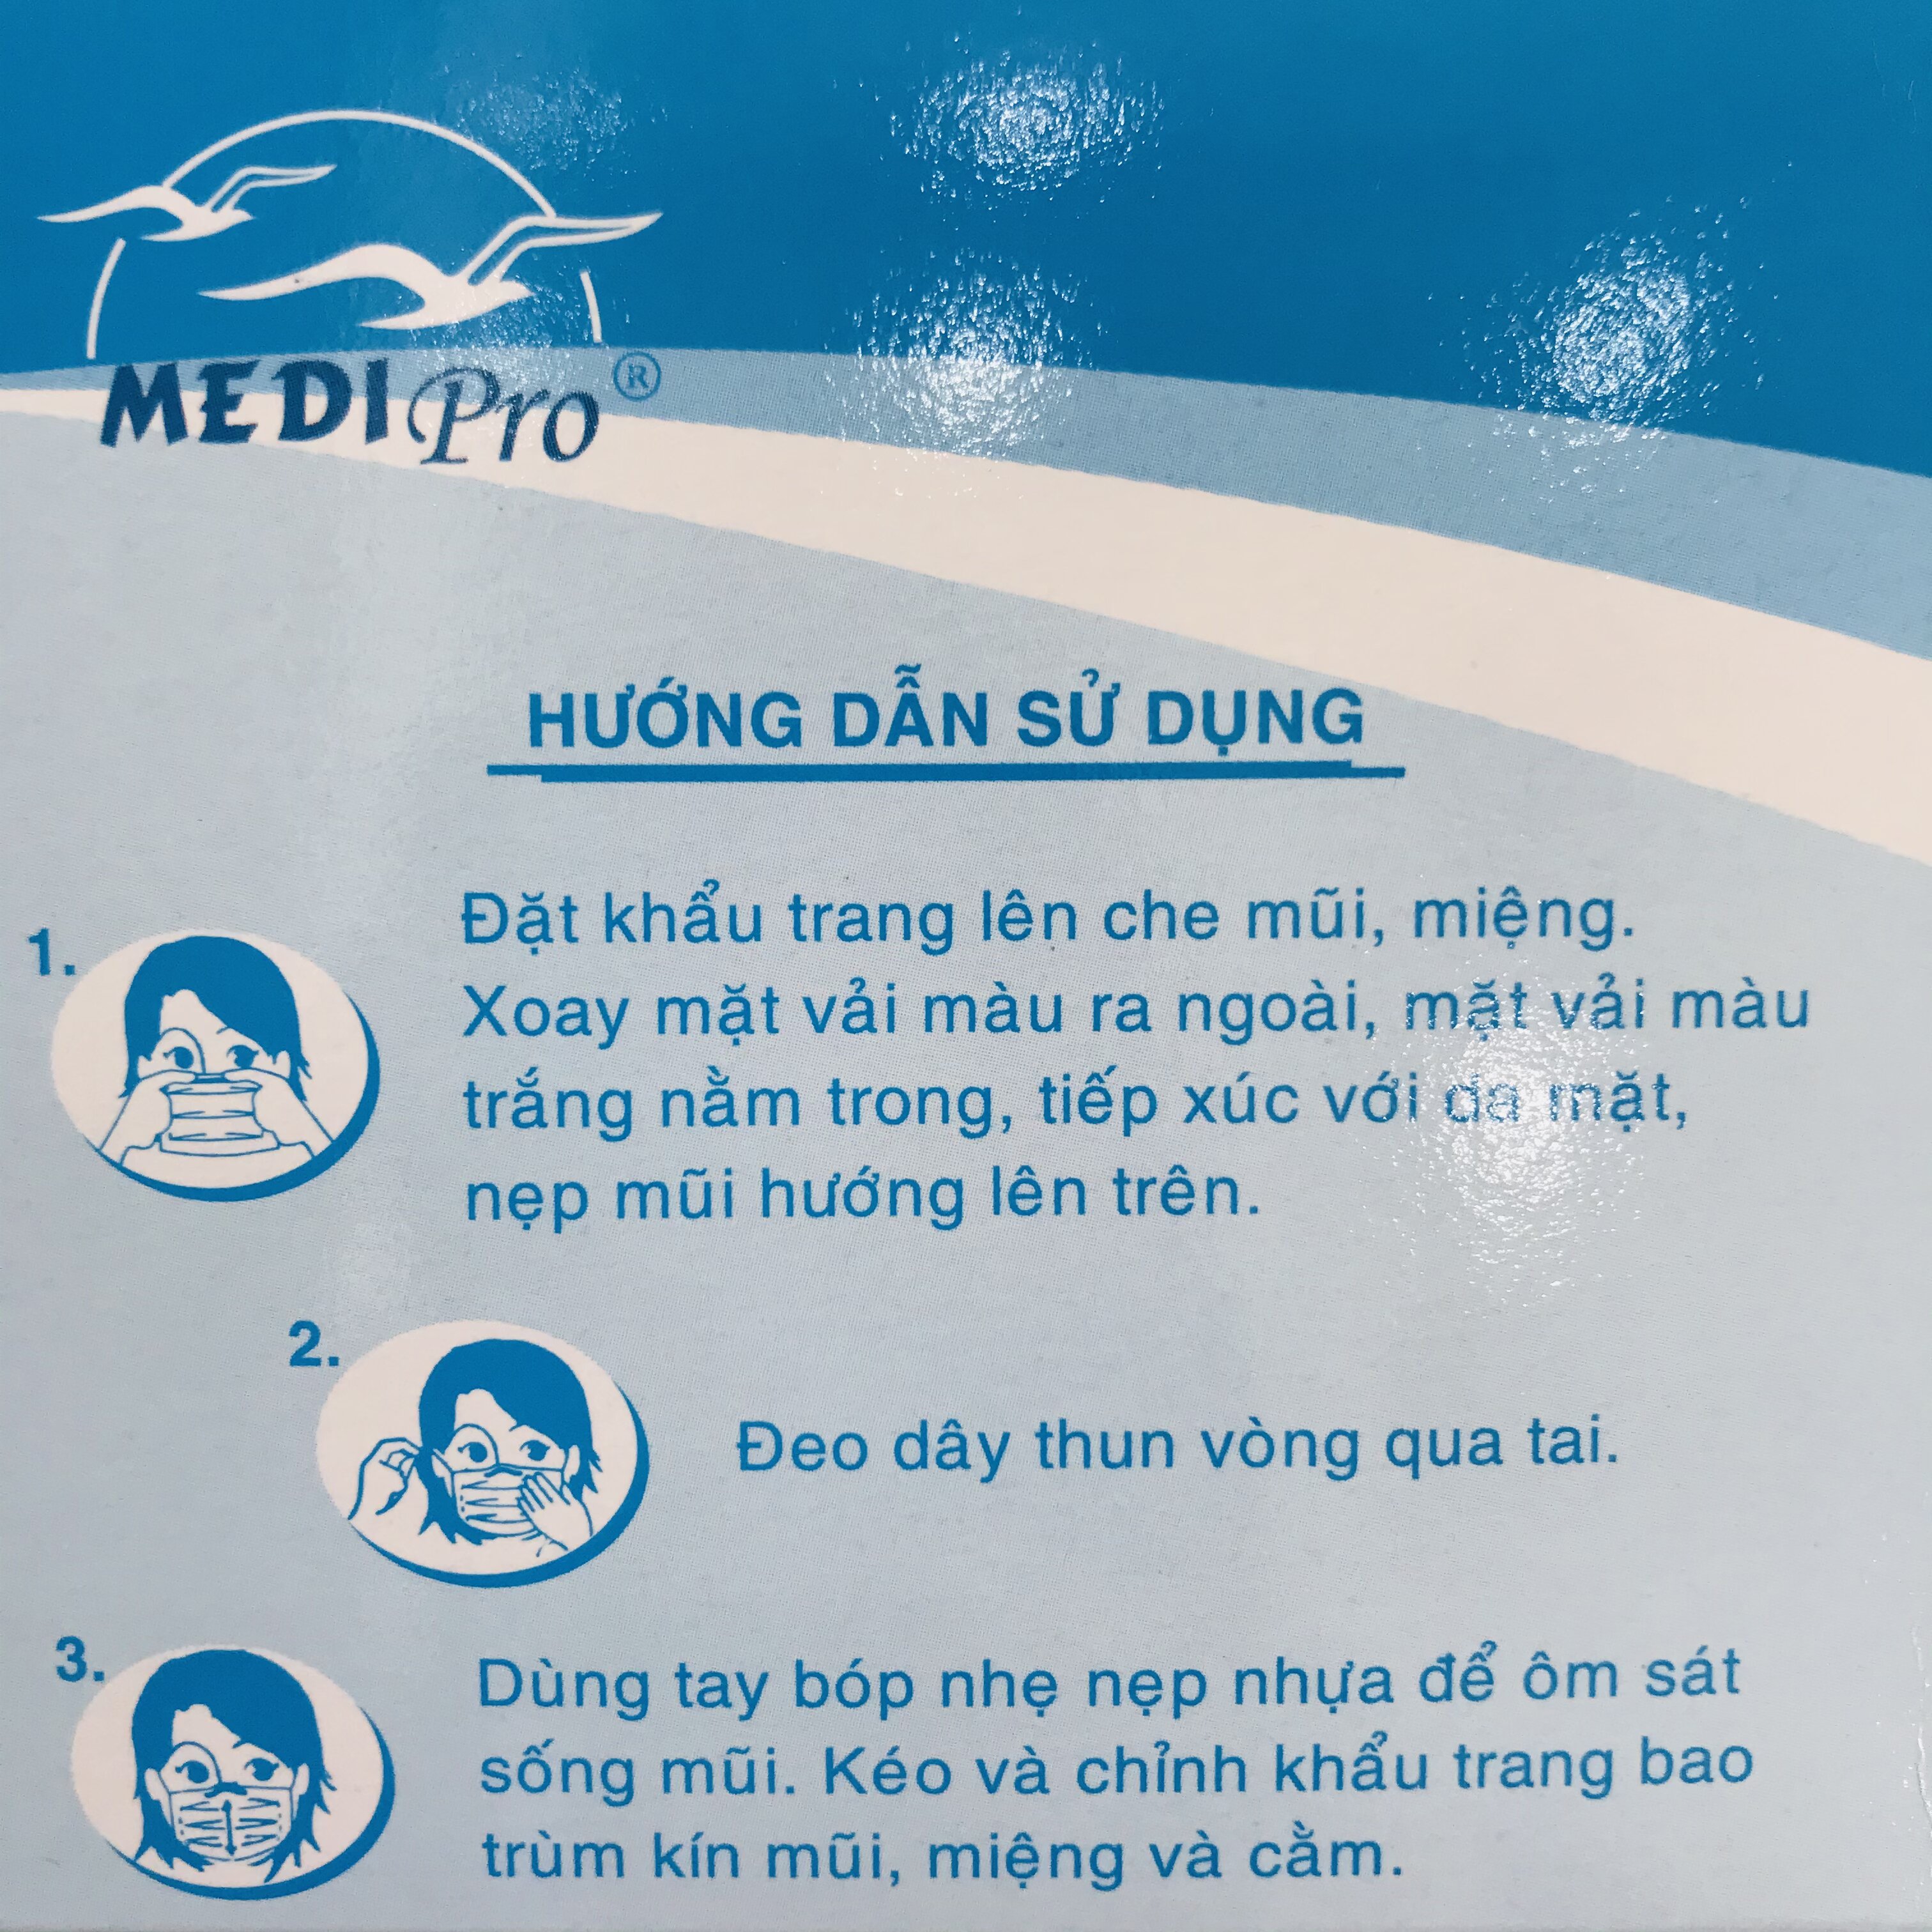 Khẩu trang y tế cao cấp Medi Pro 3 lớp - chính hãng cty Thời Thanh Bình (hộp 50 cái)